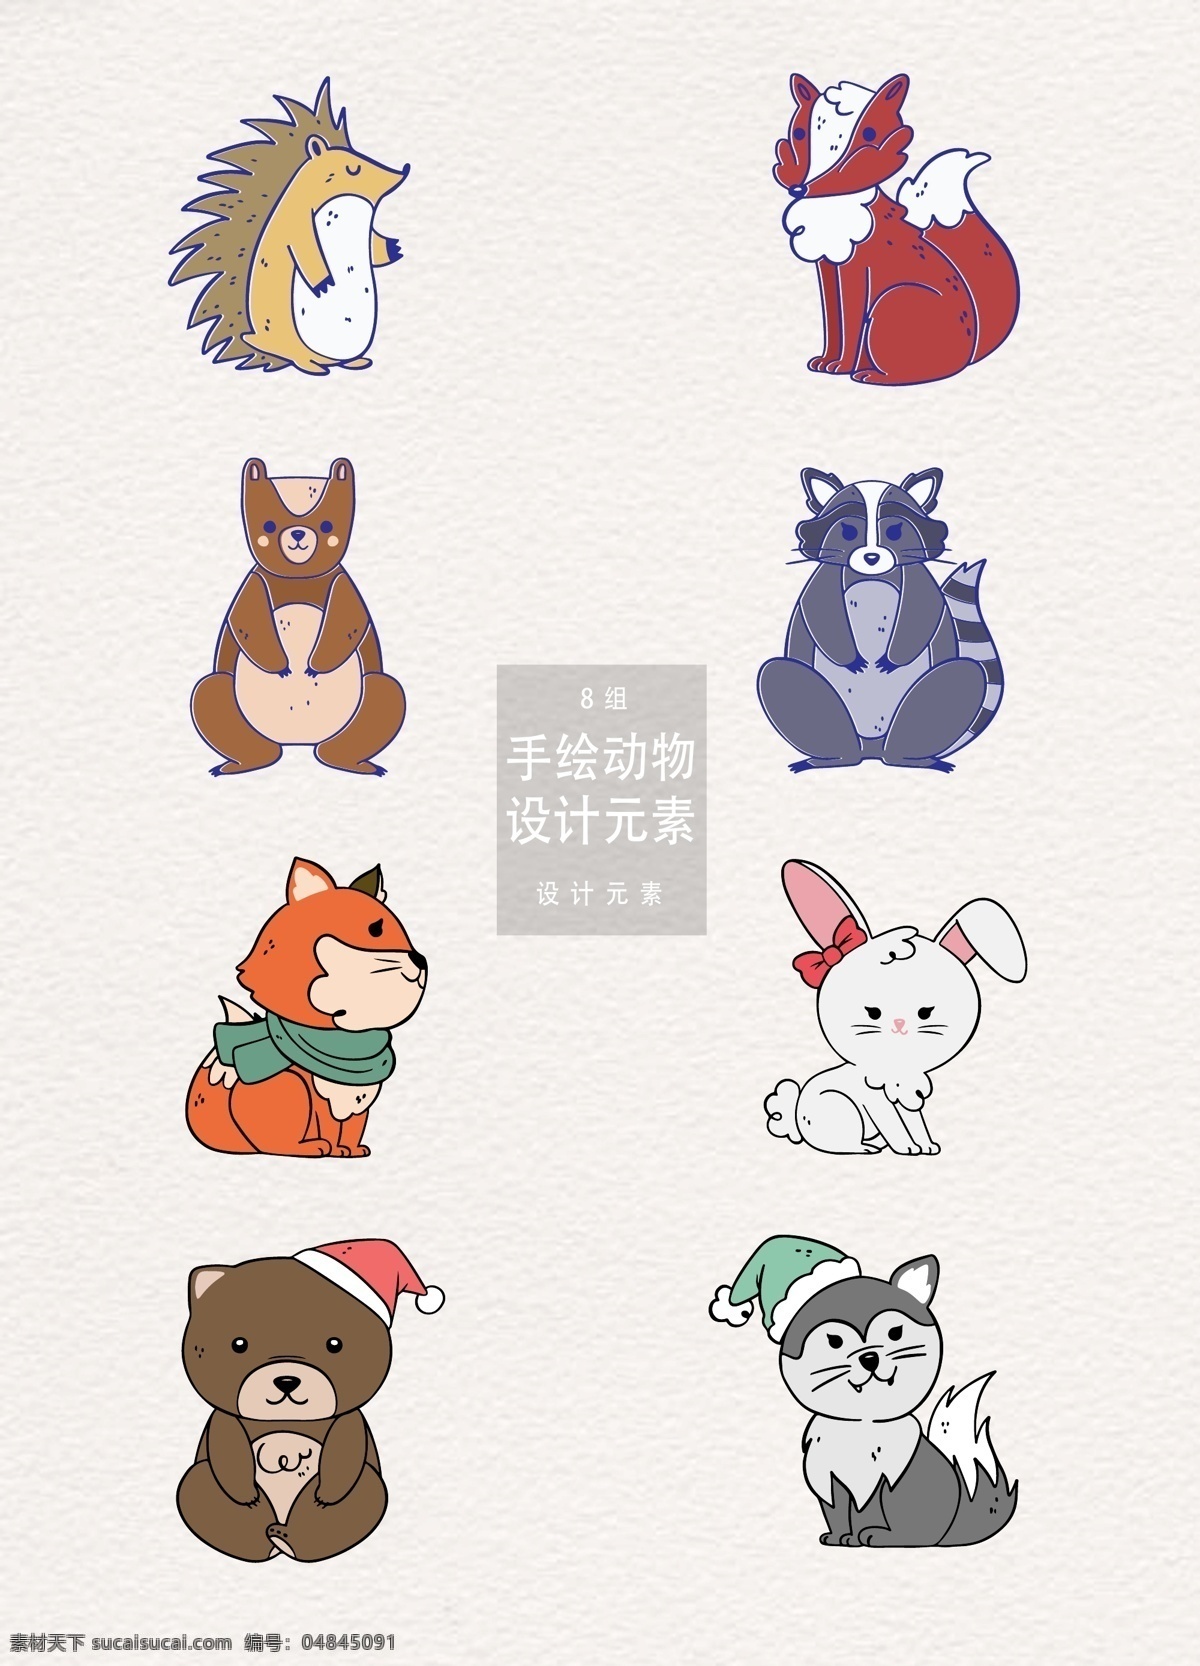 手绘 动物 元素 卡通动物 森林 冬季 冬天 手绘动物 设计元素 刺猬 狐狸 狗熊 兔子 狼